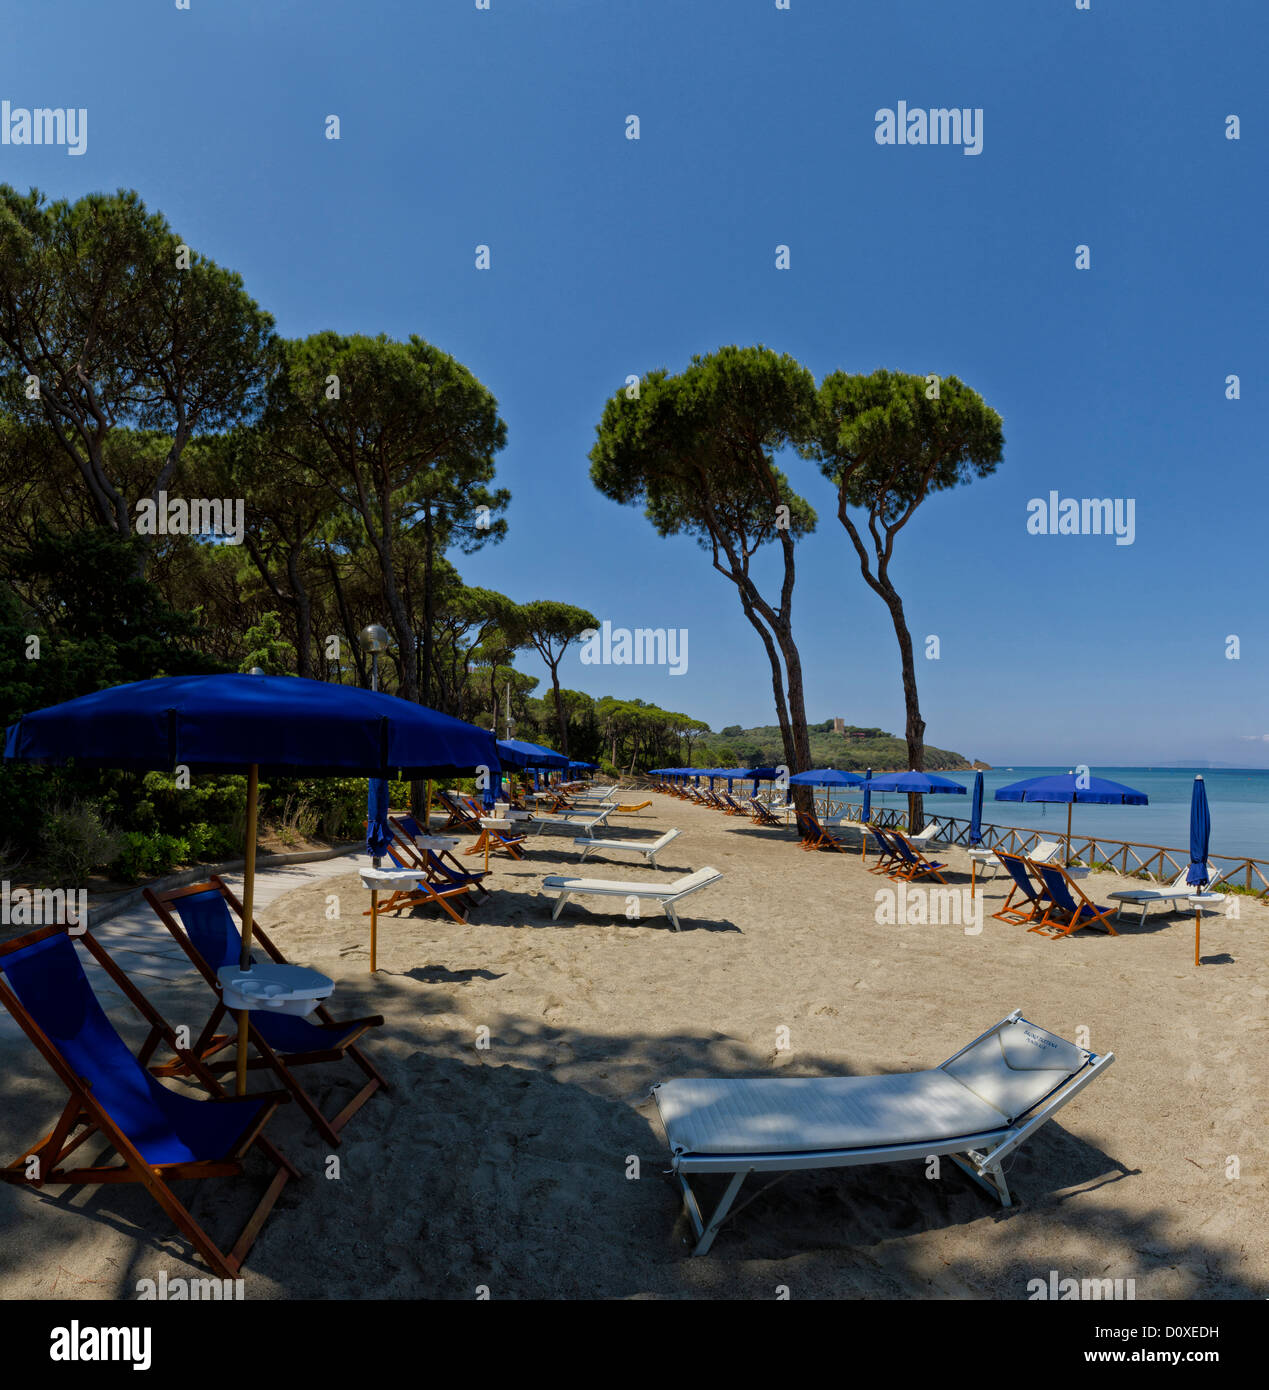 Punta Ala, Italy, Europe, Tuscany, Toscana, sea, beach, seashore, deck chairs Stock Photo